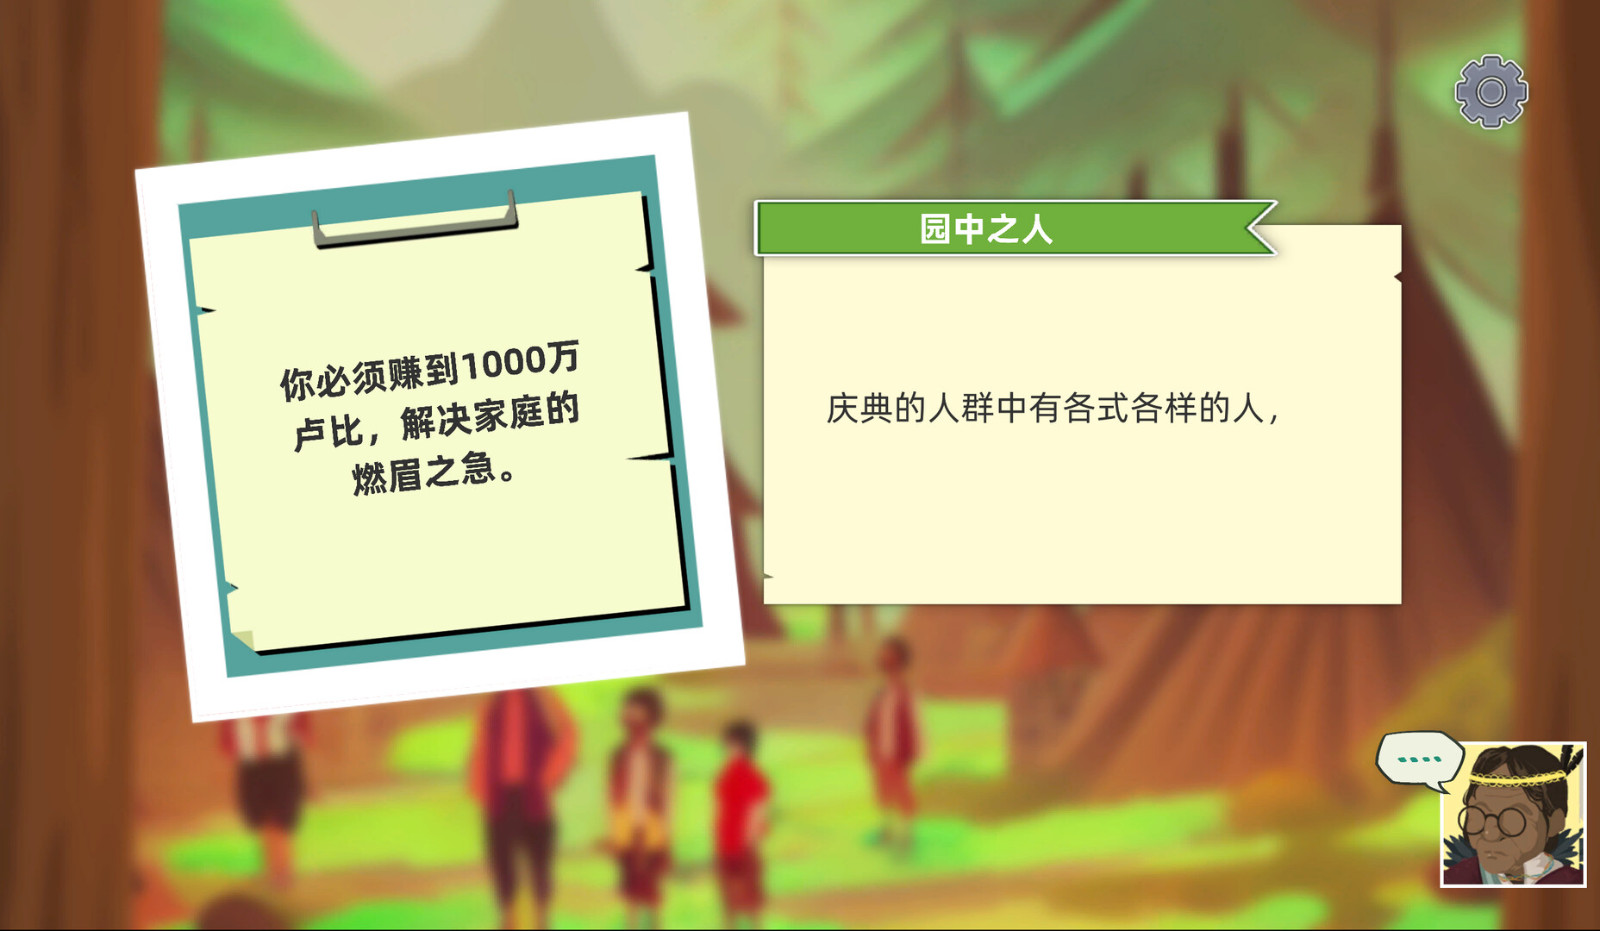 环保科普向游戏《林中人》推出简体中文截图